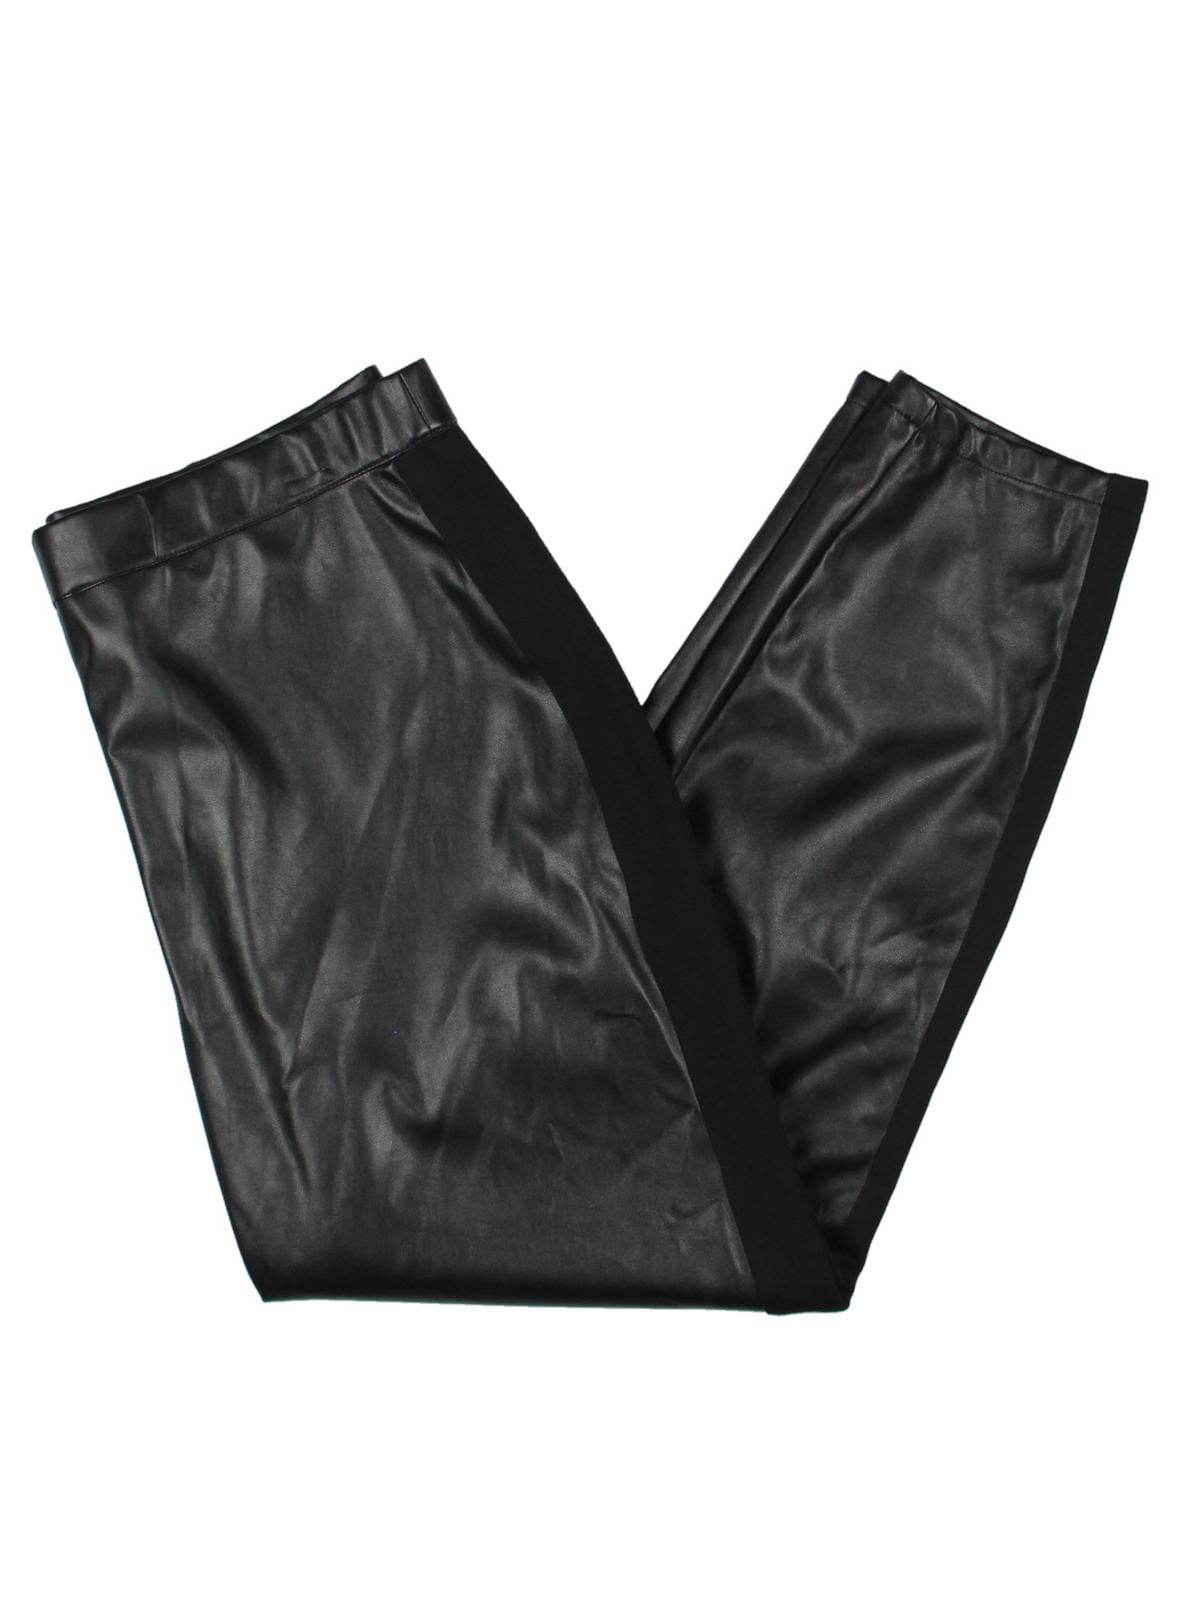 Spanx Faux Leather Side Stripe Leggings Black Women's Size M | eBay